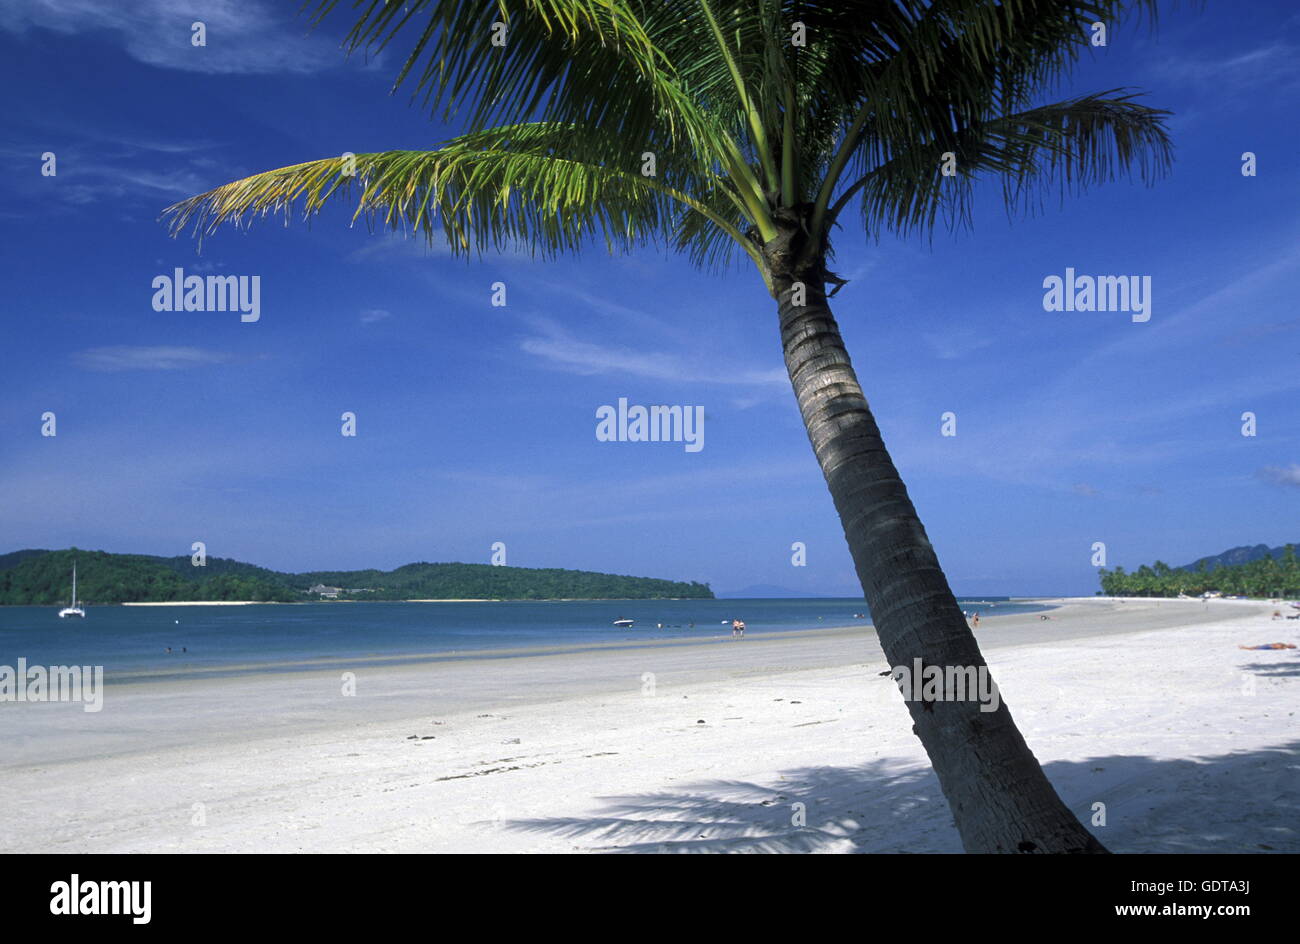 La spiaggia di Pantai Tanjung Rhu sulla costa dell'Isola di Langkawi nel nord-ovest della Malesia Foto Stock